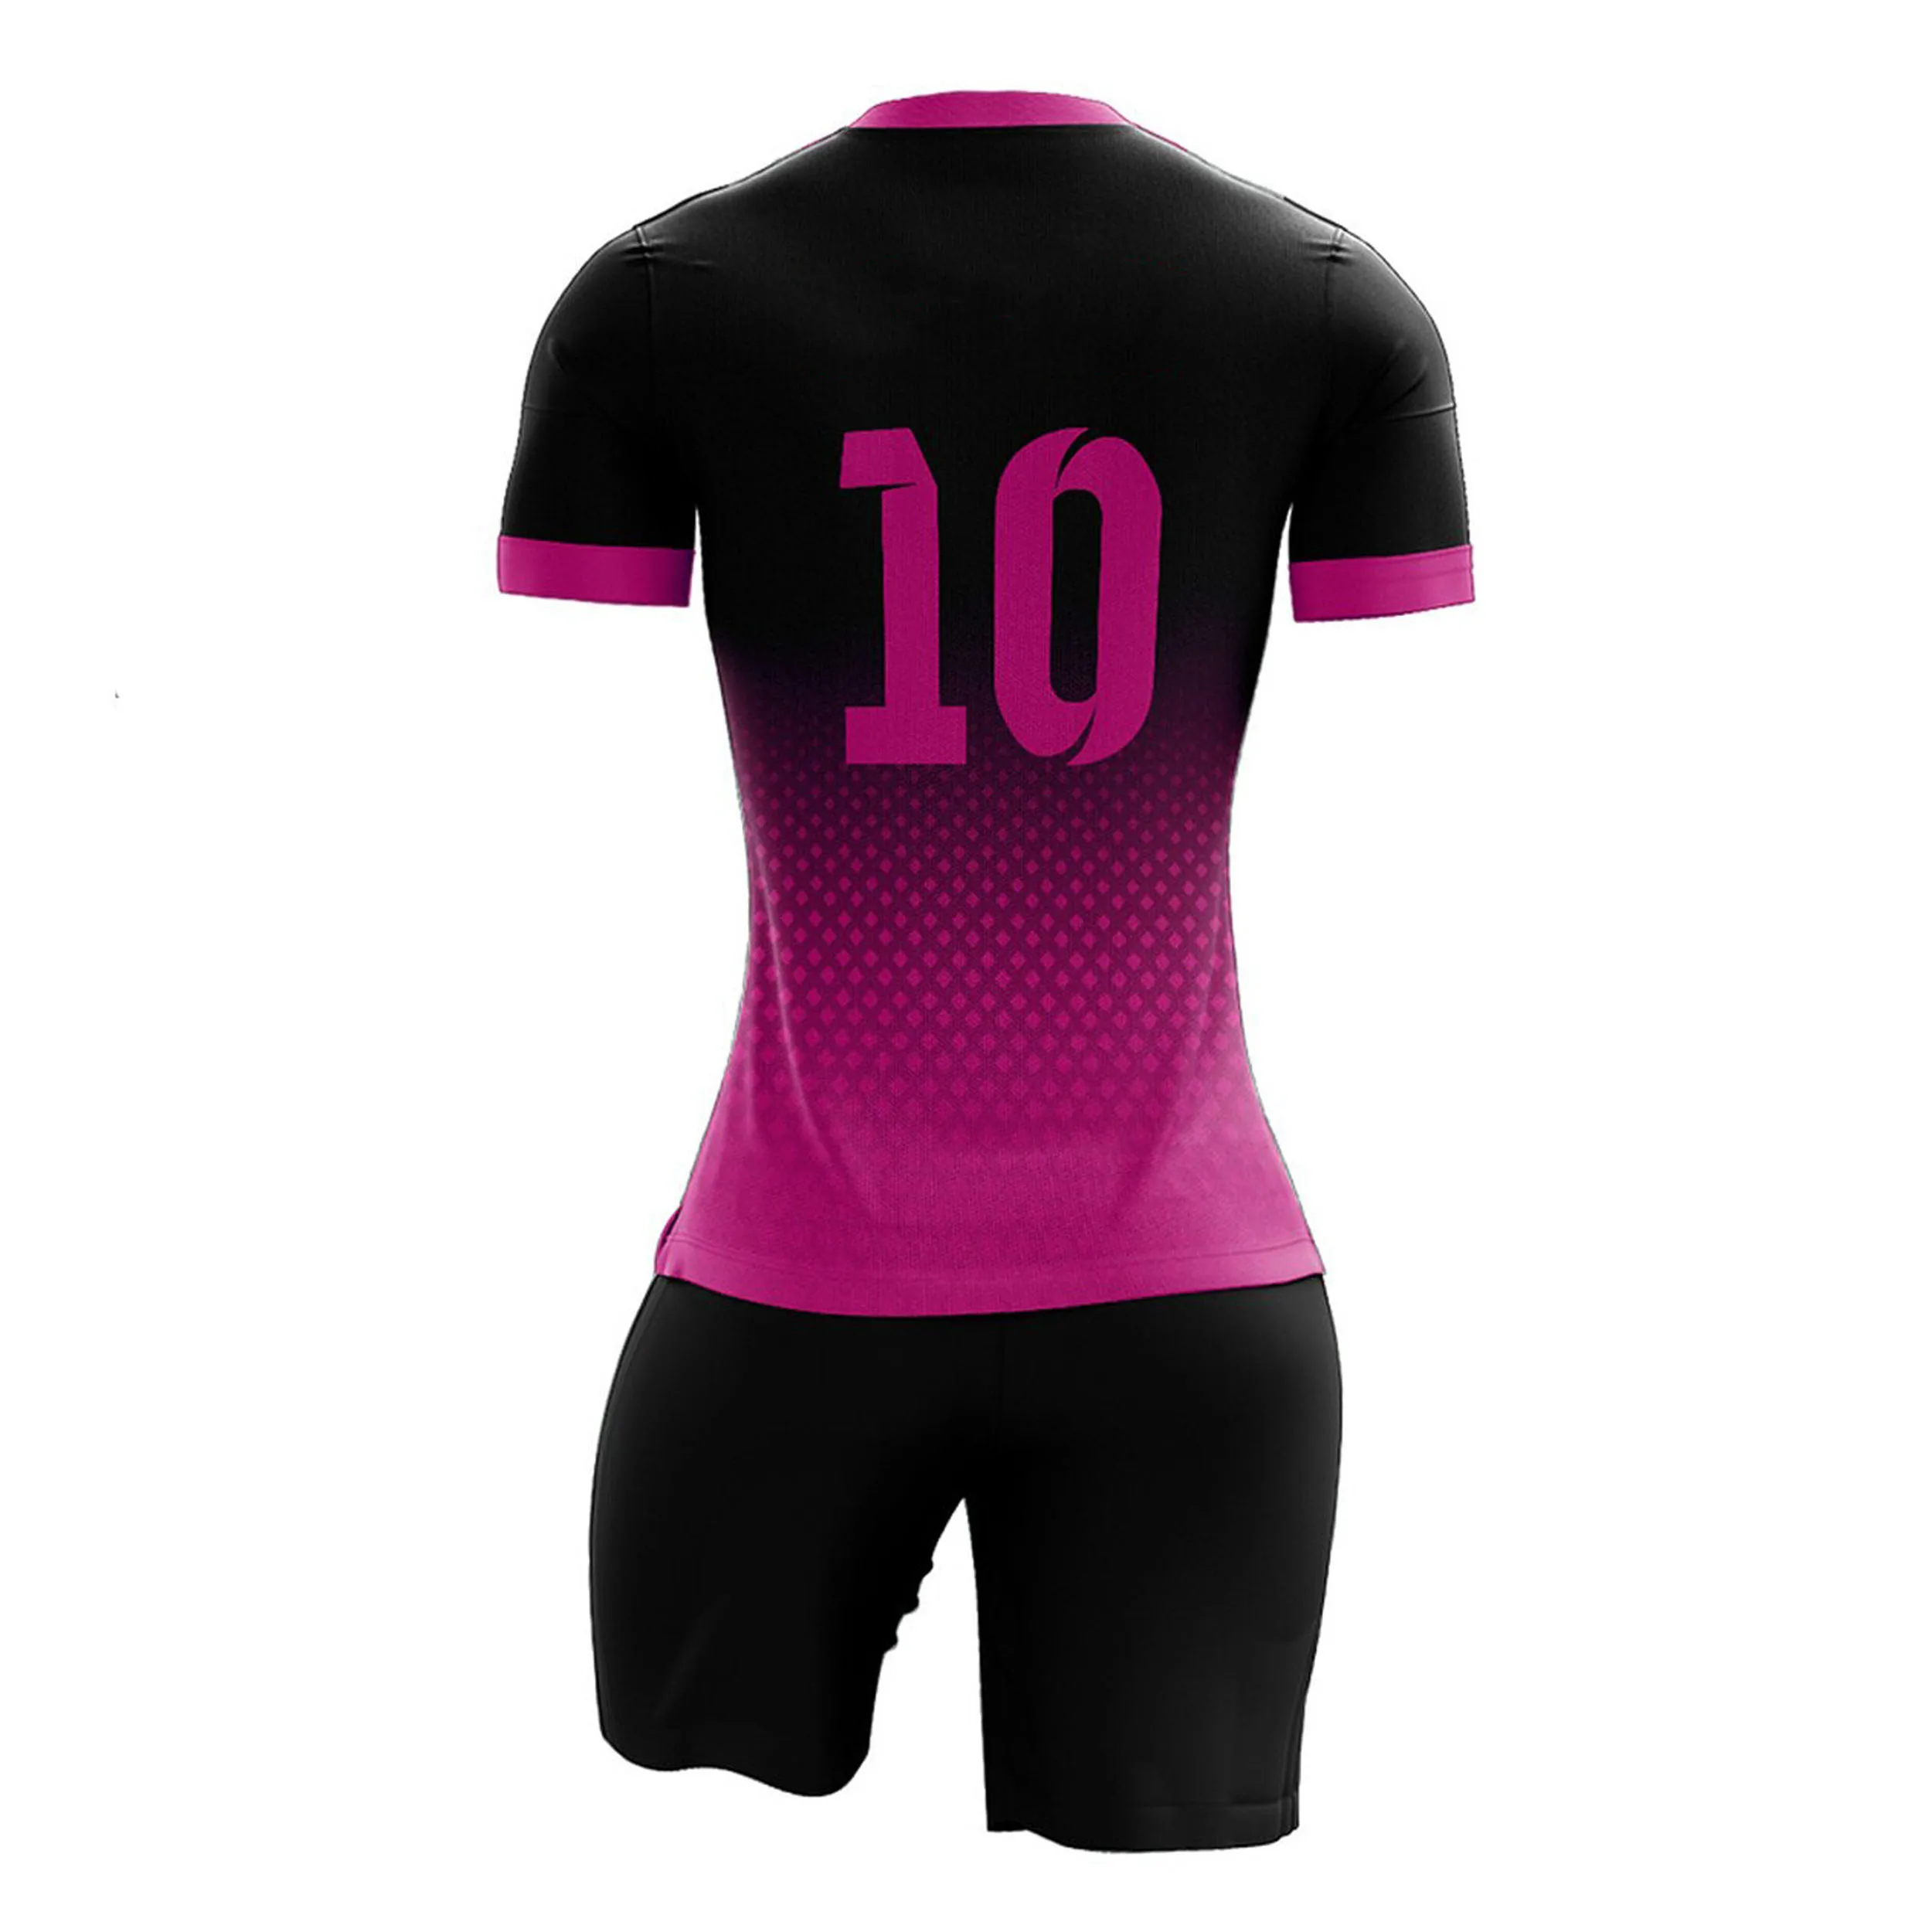 Source Uniforme de fútbol personalizado niñas y mujeres, uniforme de fútbol on m.alibaba.com